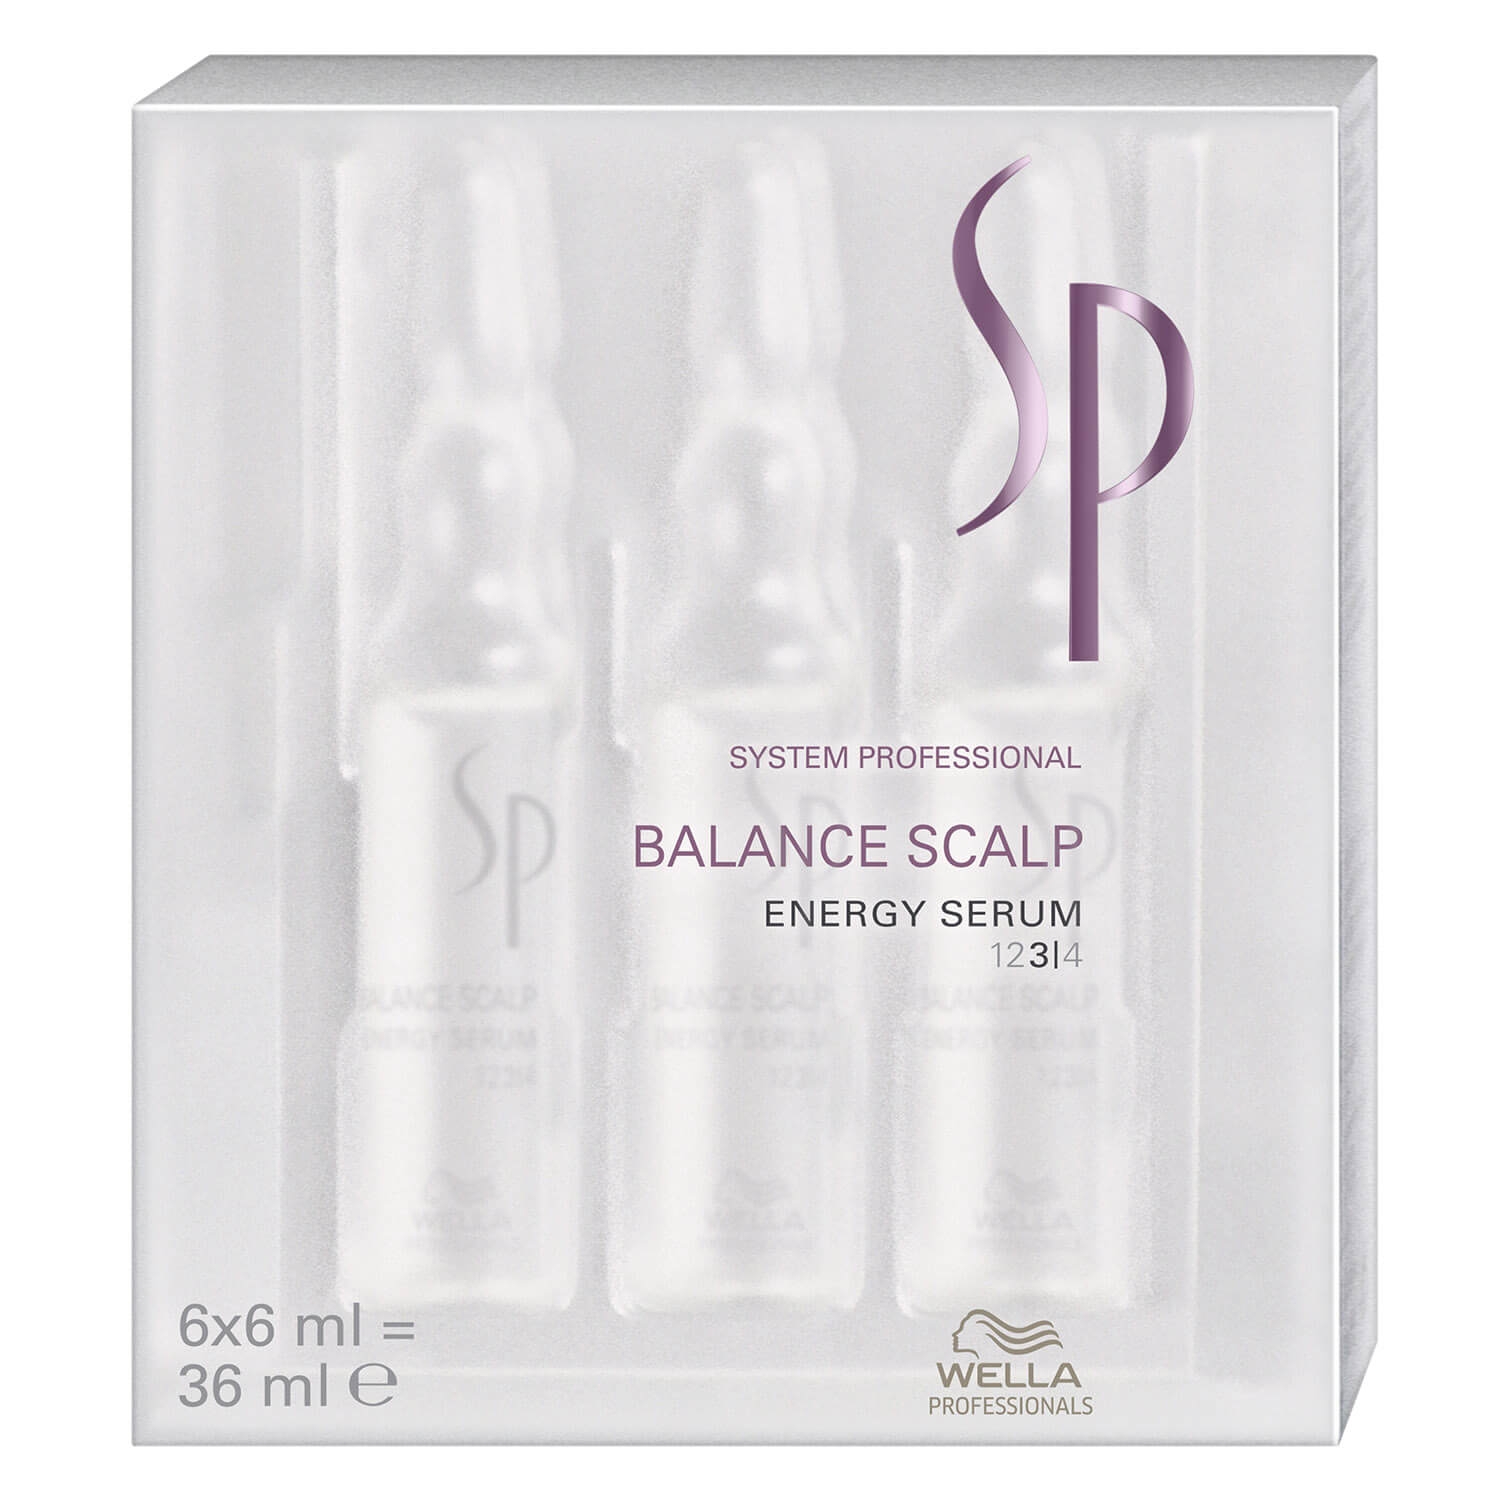 Produktbild von SP Balance Scalp - Energy Serum